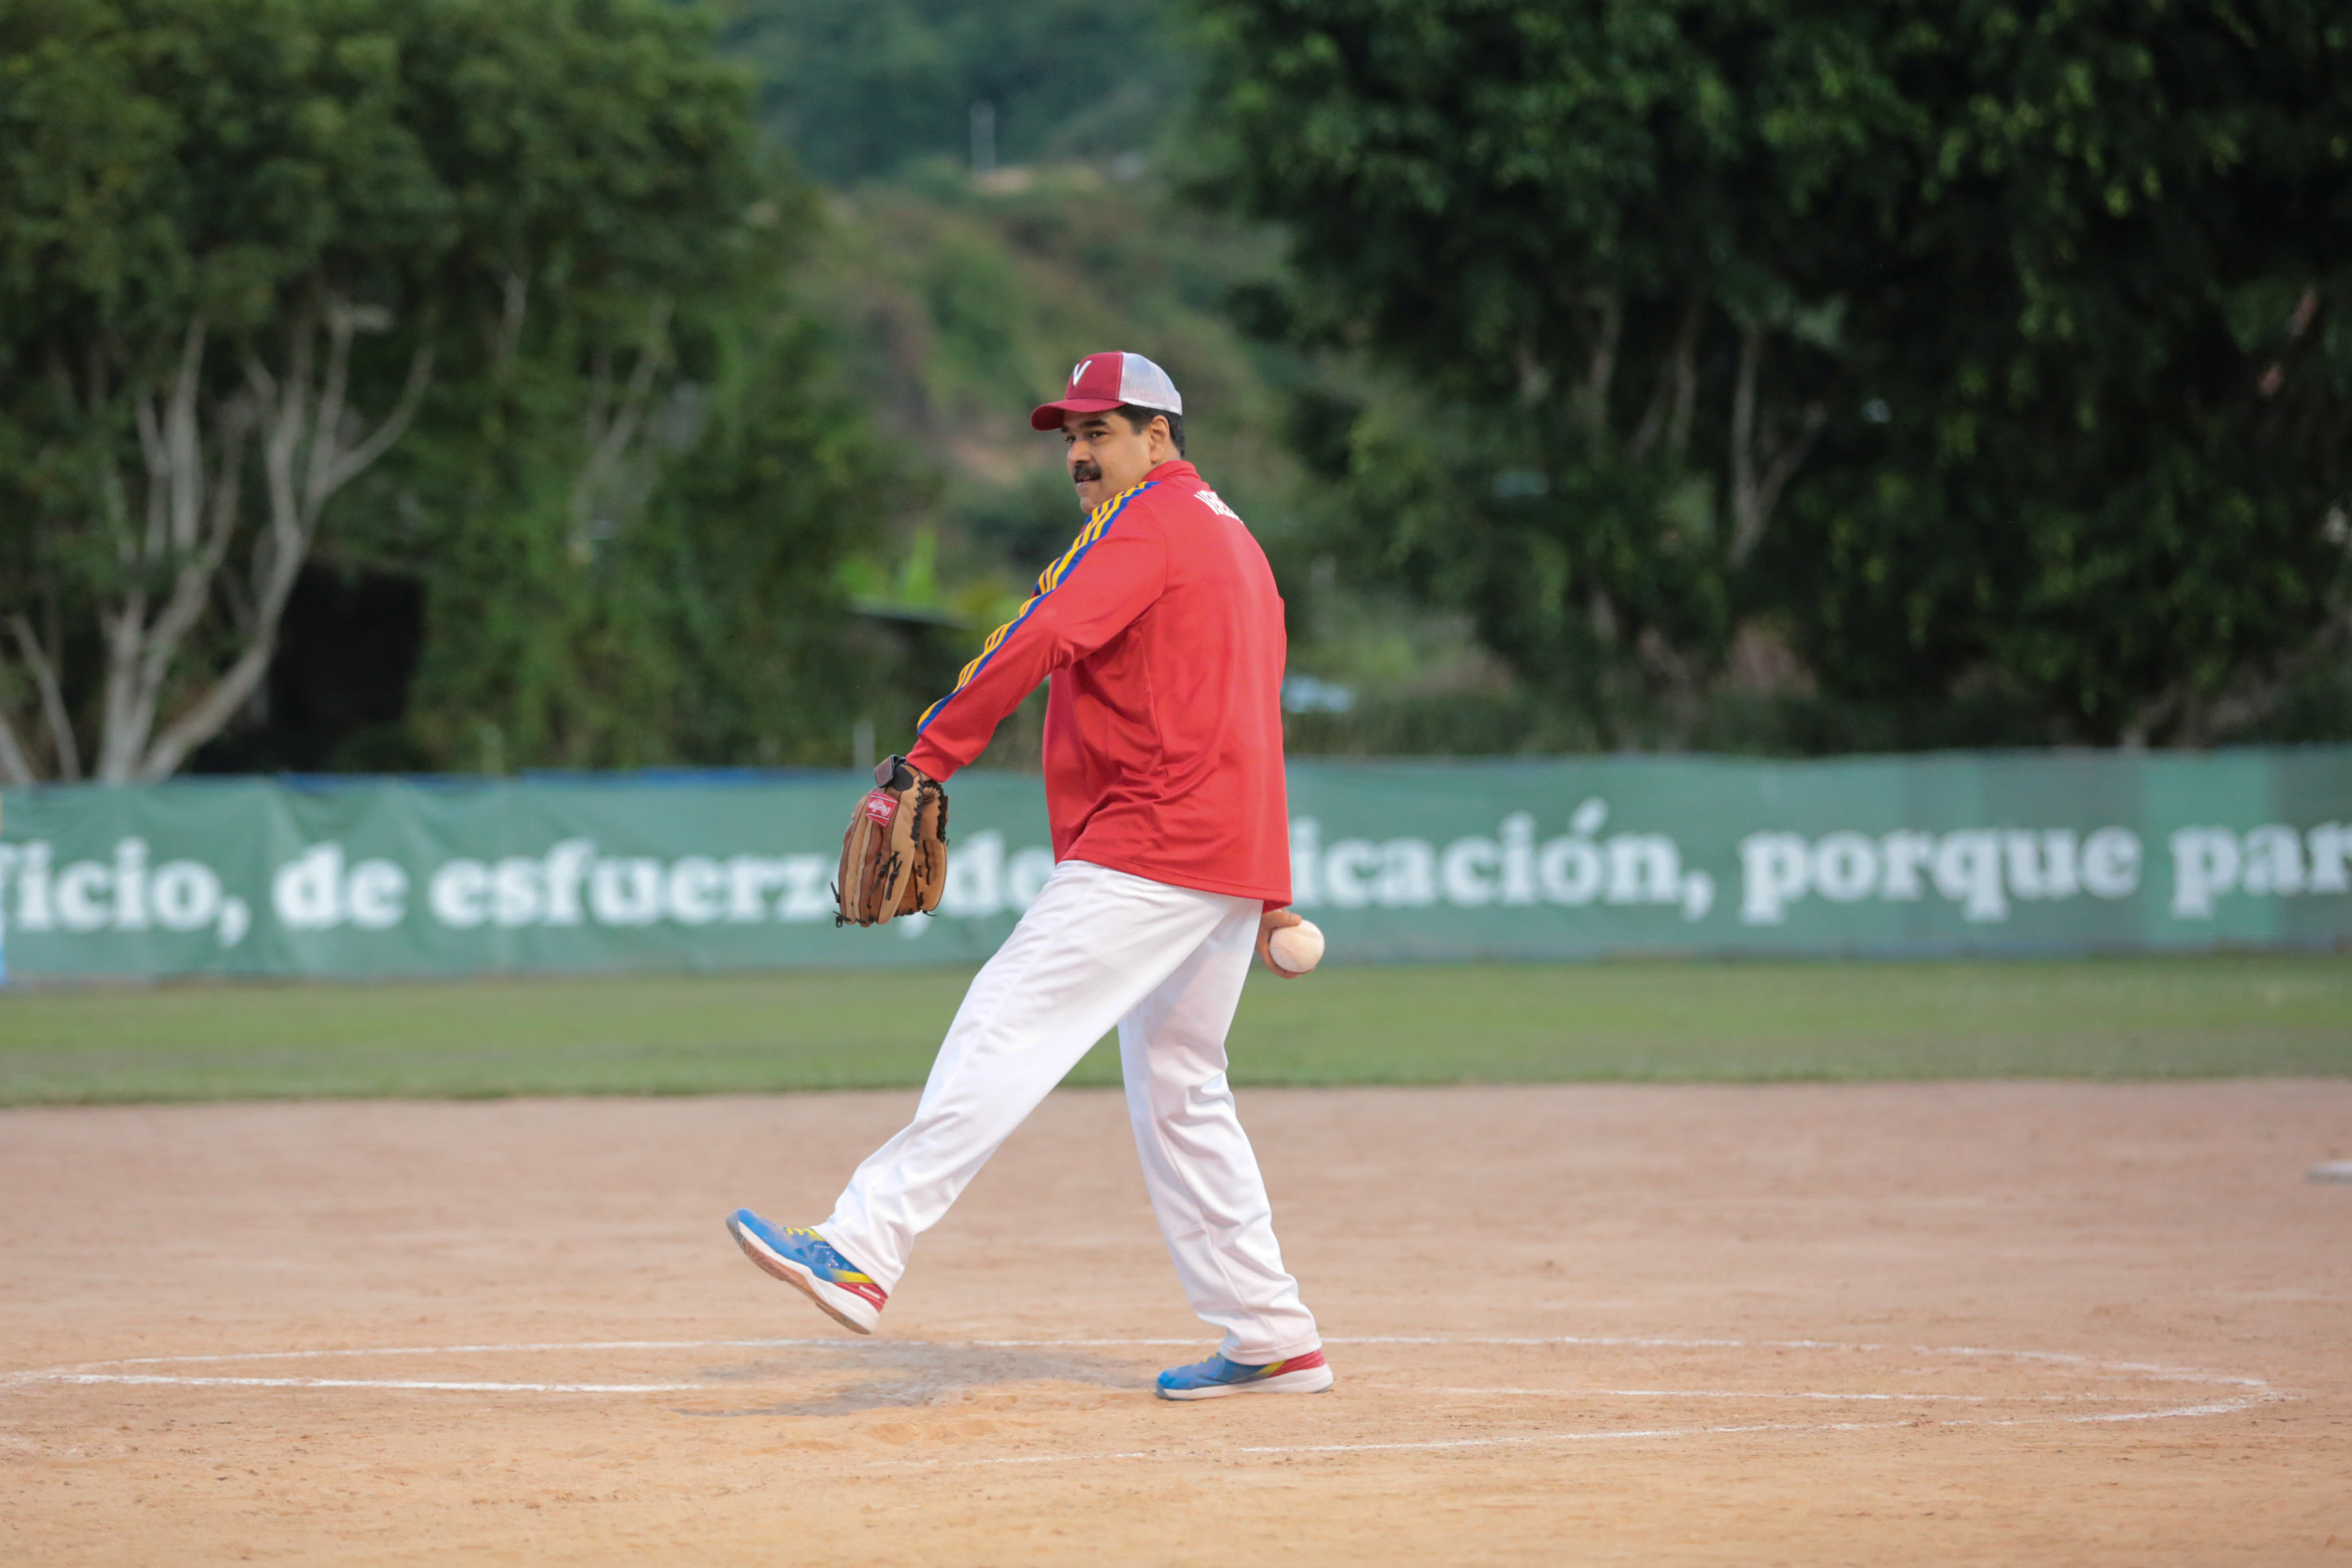 LA FOTO: El pitcher más maleta de la historia de Venezuela, Nicolás, quiere seguir lanzando